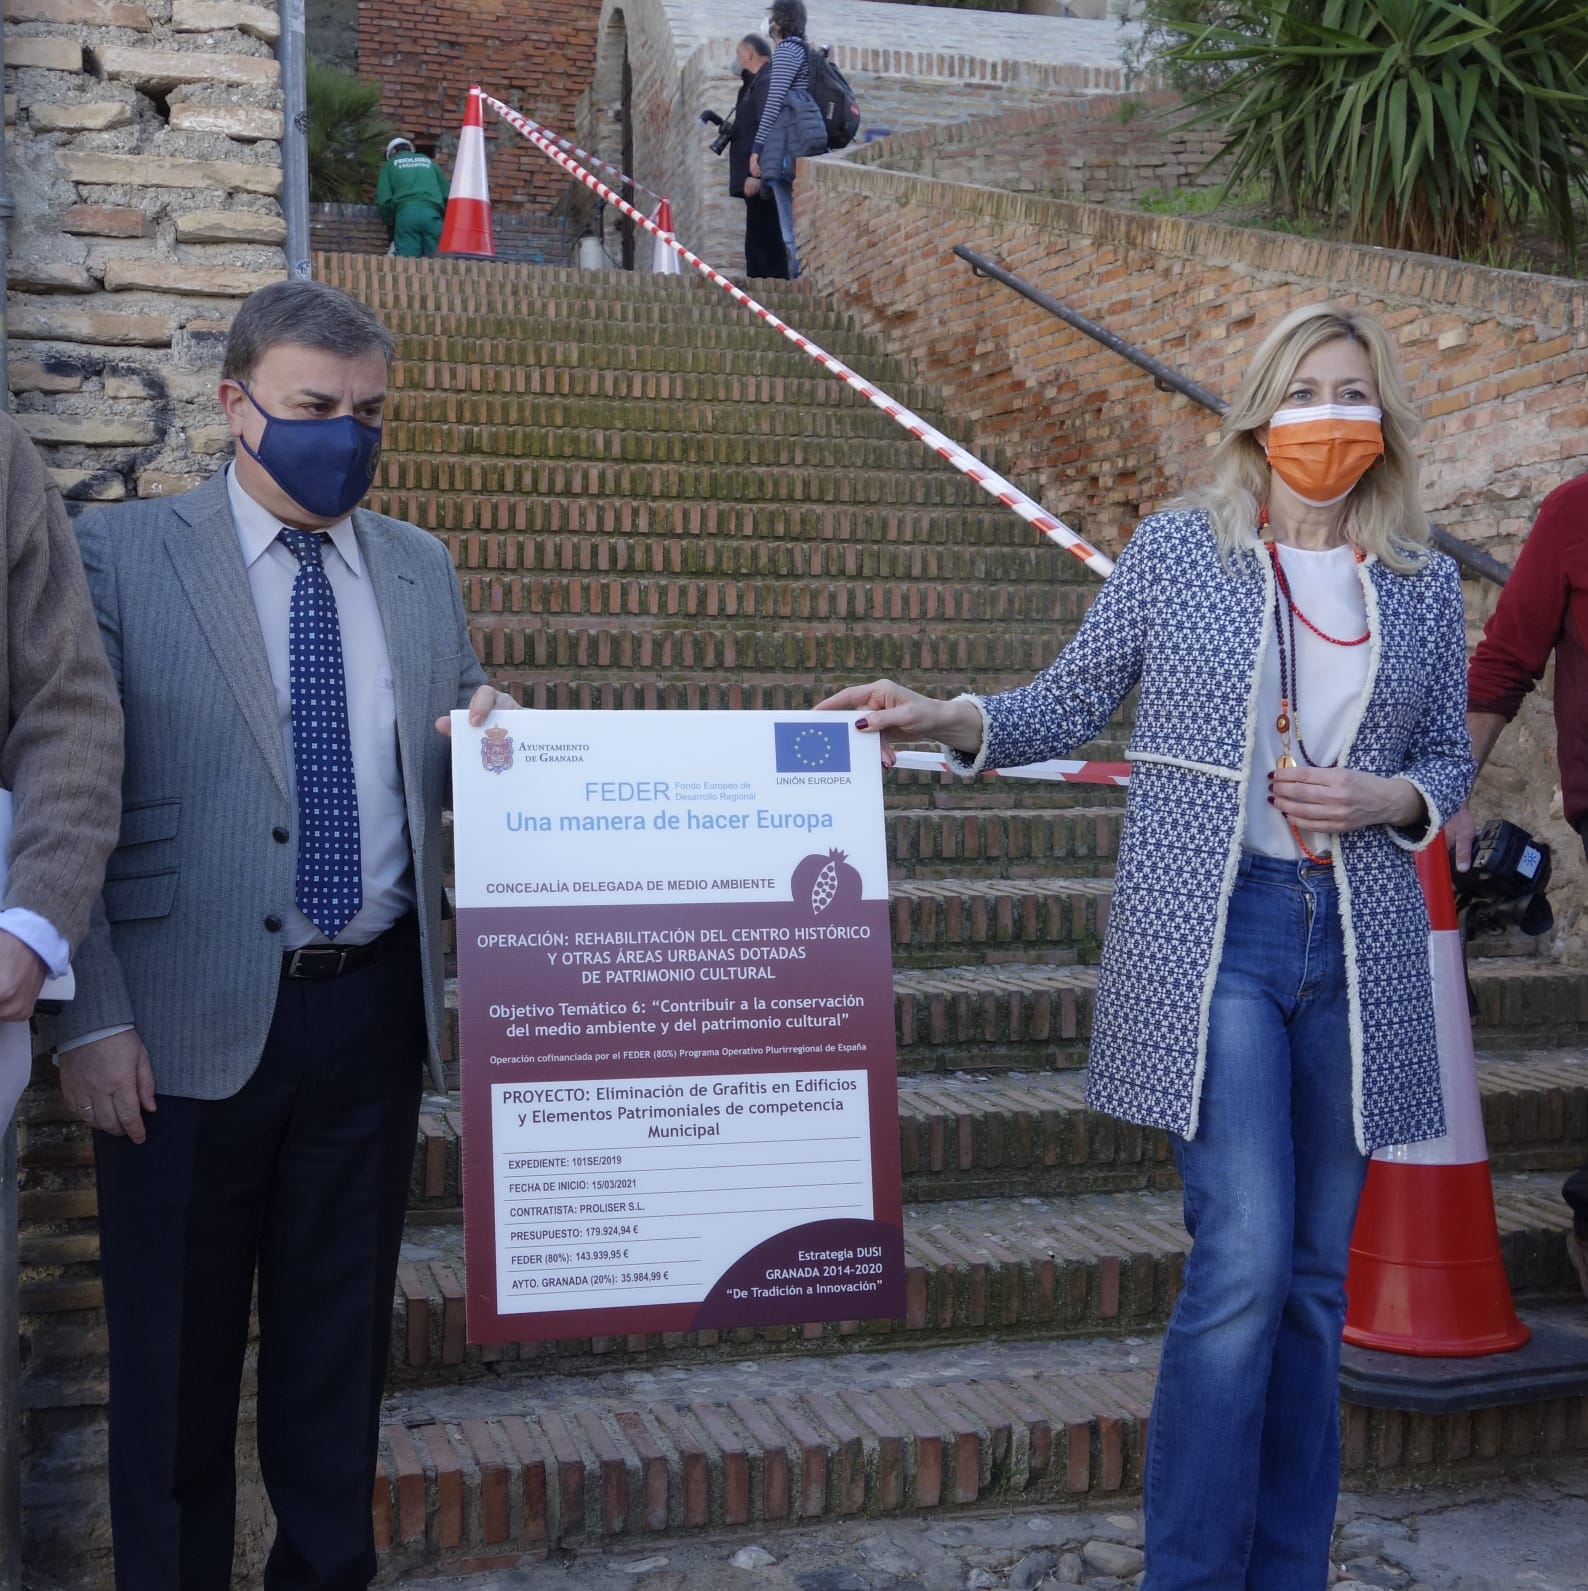 ©Ayto.Granada: El Ayuntamiento limpia de pintadas vandálicas 112 edificos municipales en los que aplica una capa anti-pintadas